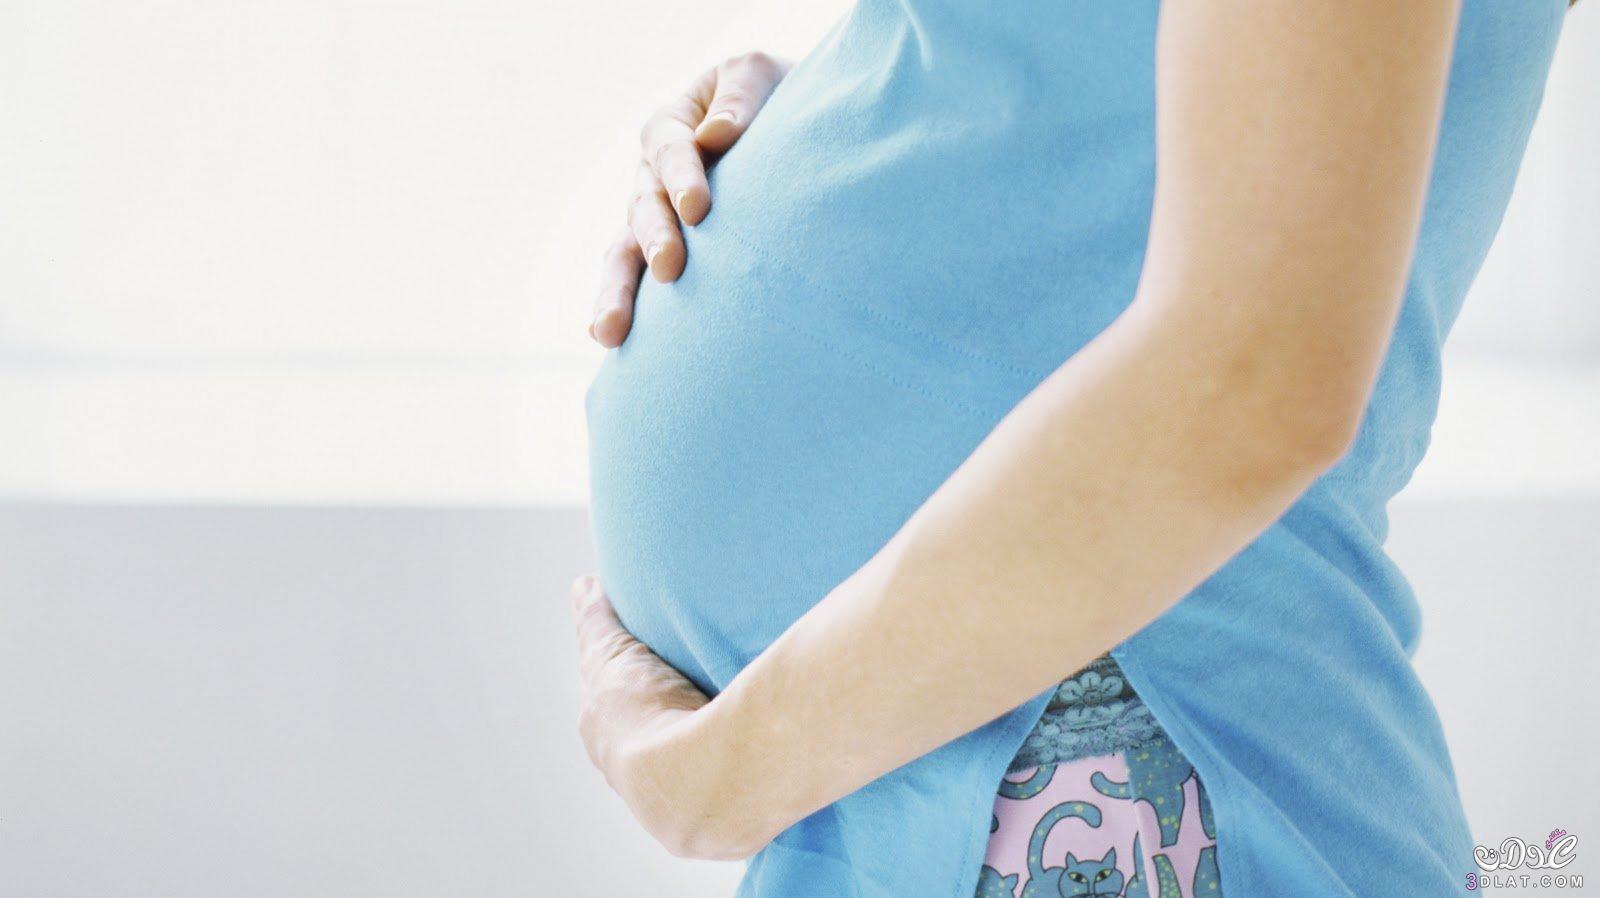 علاج نزلات برد الحامل بين الطب والطبيعة , وصفات طبيه طبيعيه لنزلات البرد